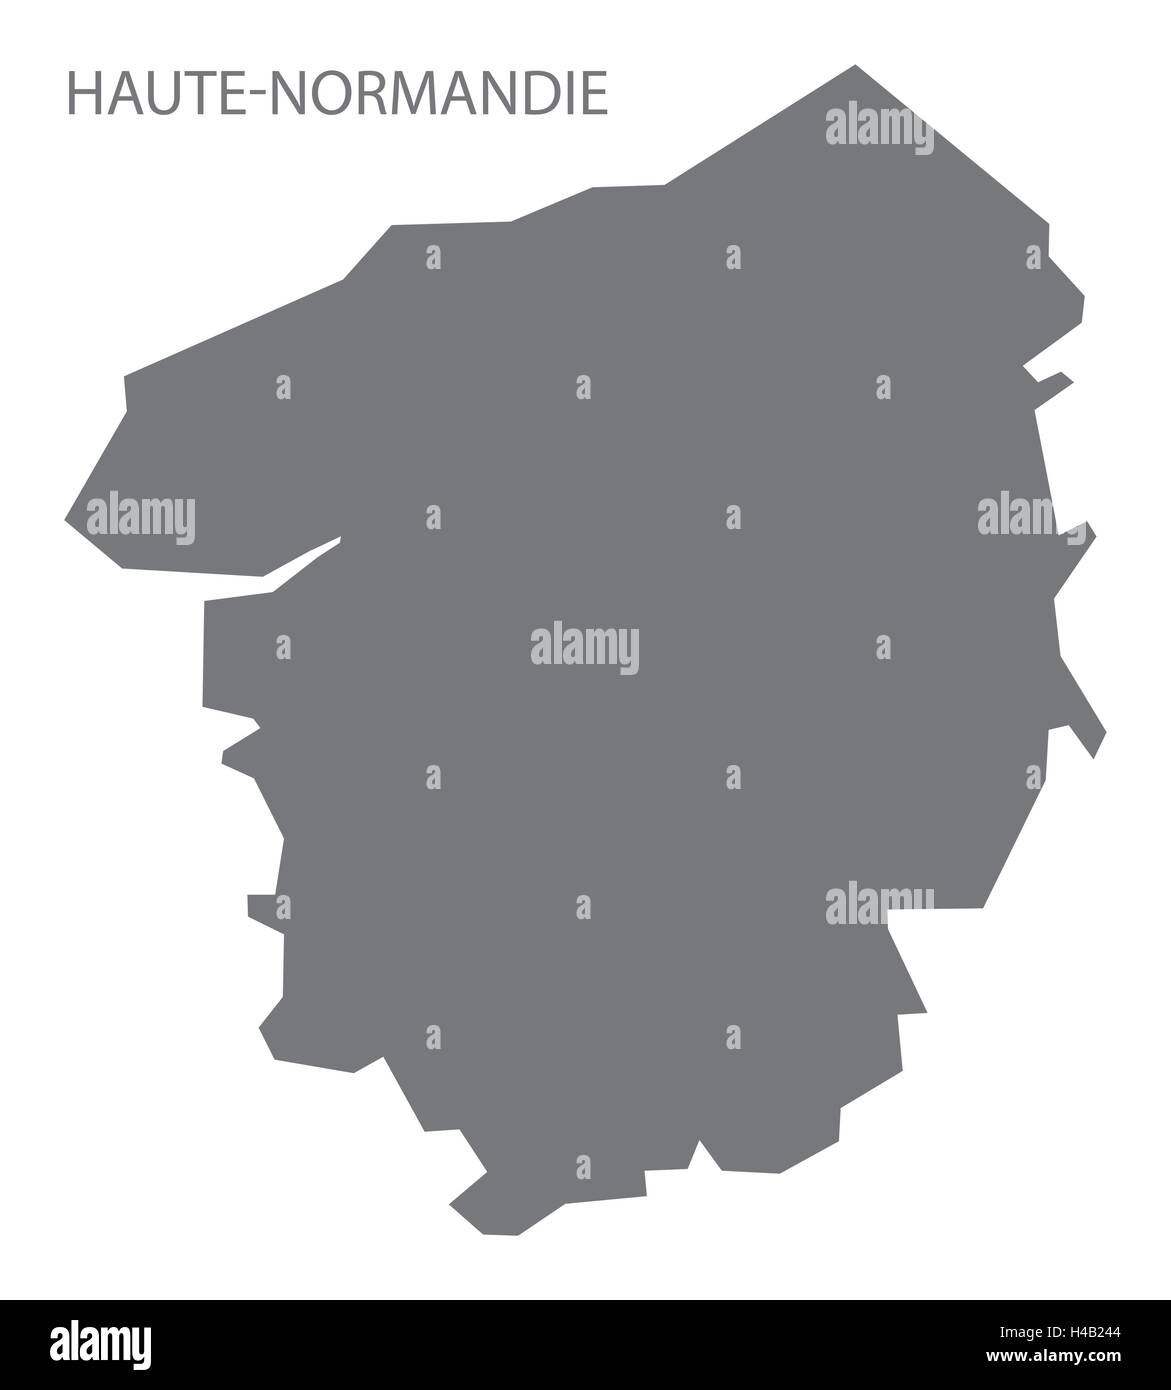 Haute-Normandie France Map grey Stock Vector